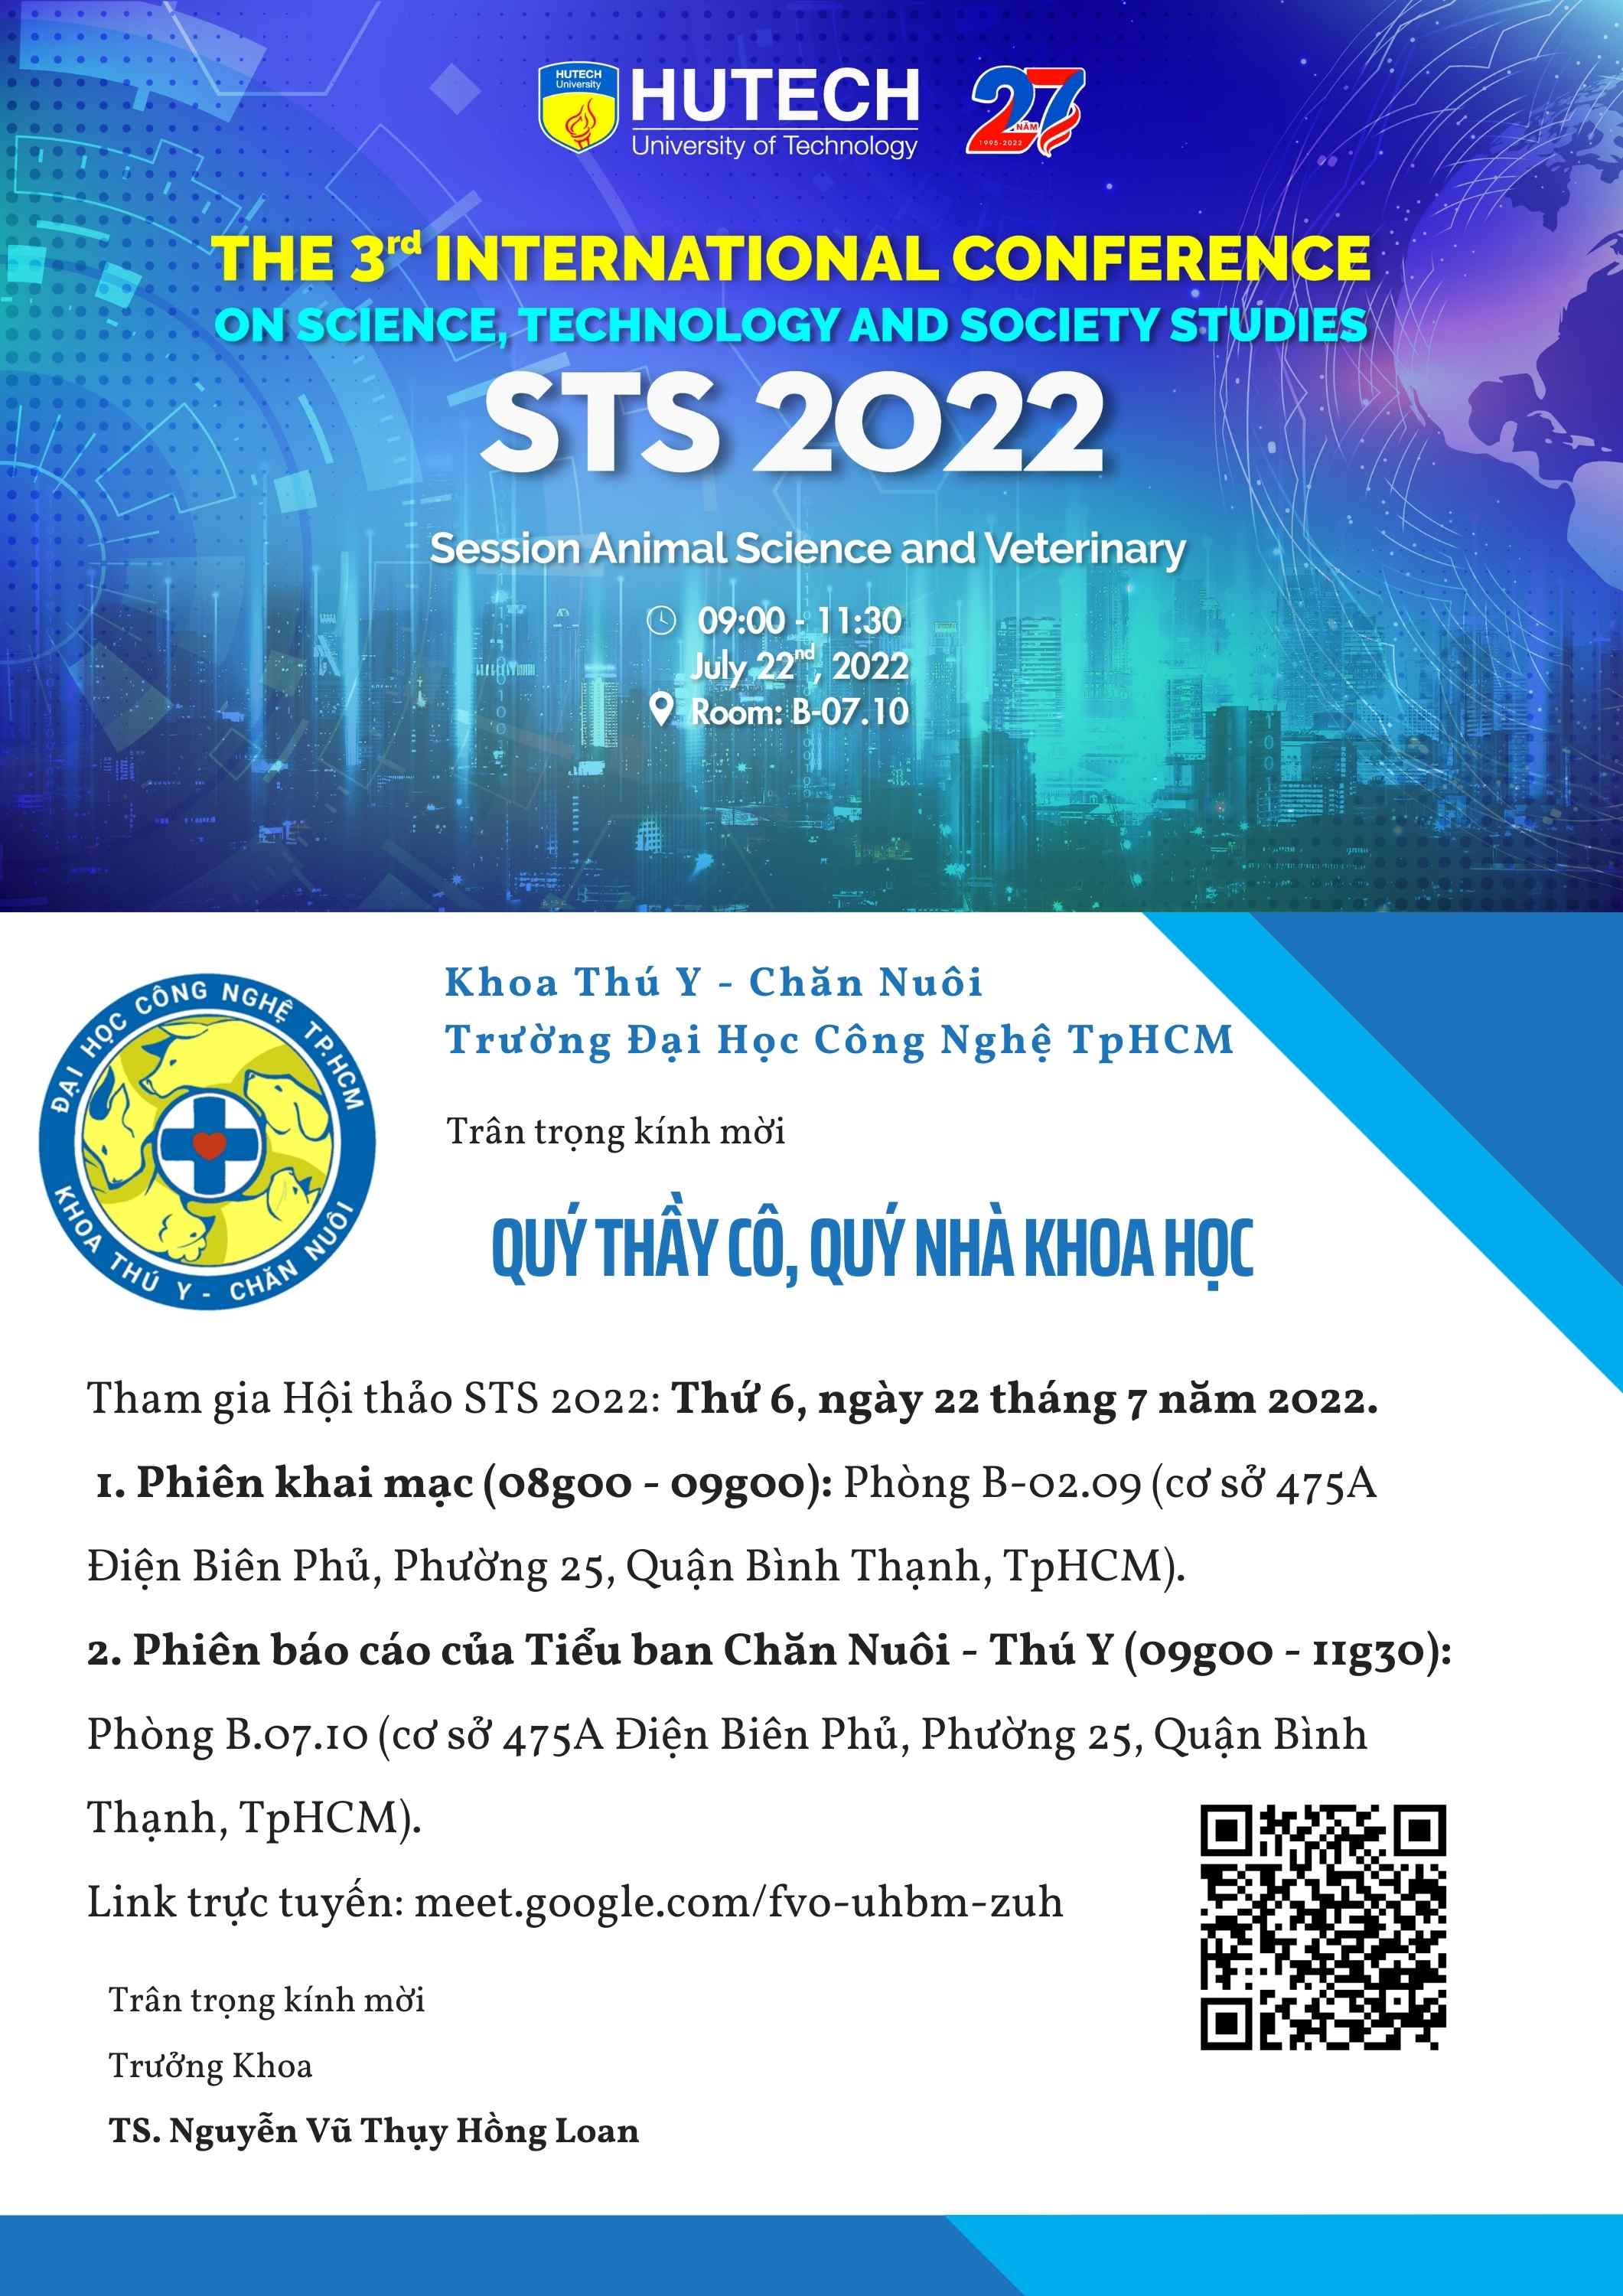 Hội thảo Khoa học quốc tế STS 2022 của HUTECH sẽ chính thức diễn ra vào ngày 22/7 tới 38